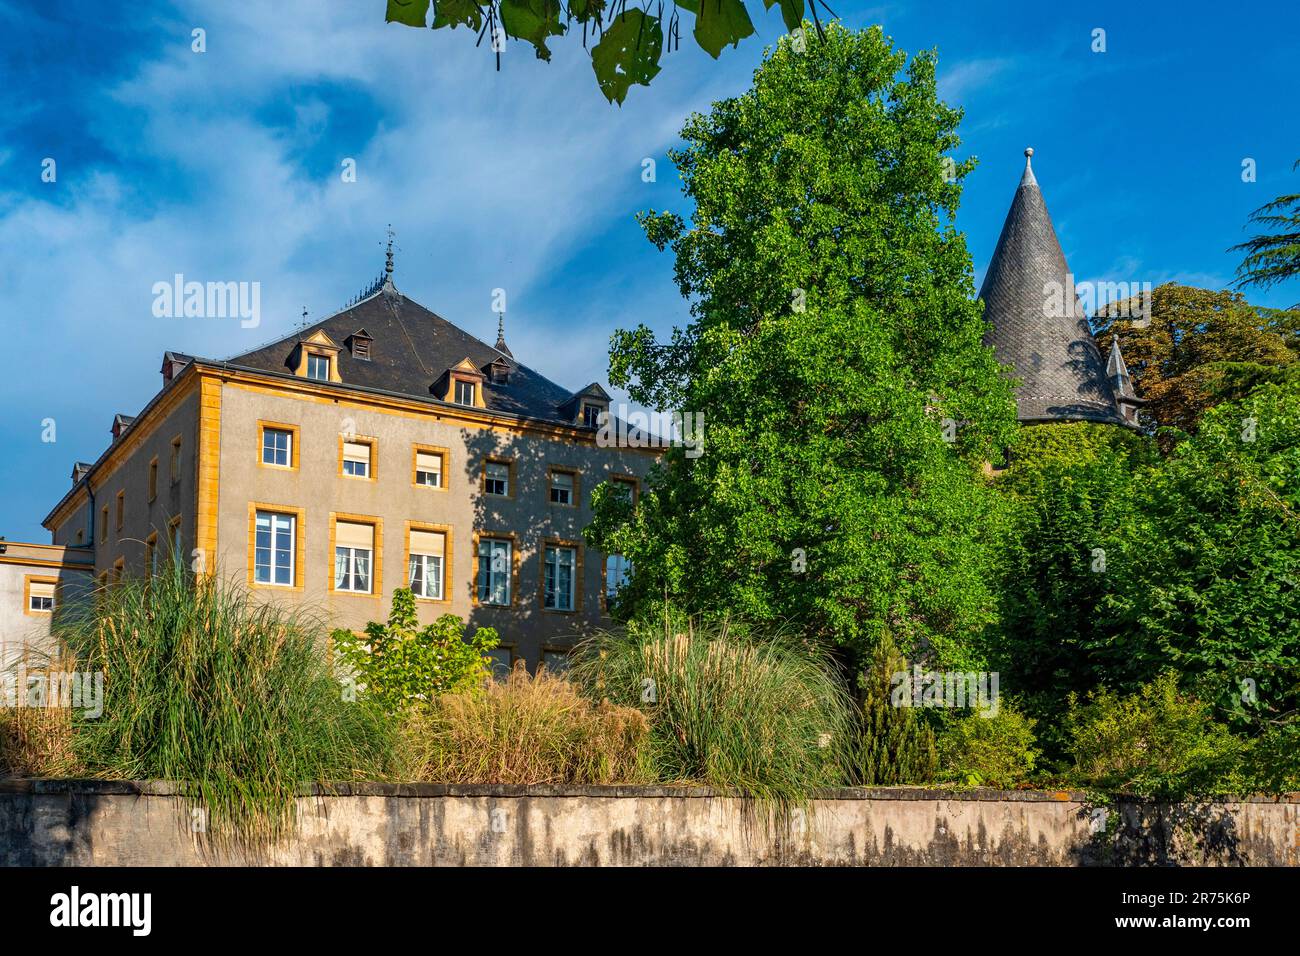 Château de Schengen, Benelux, pays du Benelux, vallée de la Moselle, Moselle, Canton de Remich, Luxembourg Banque D'Images